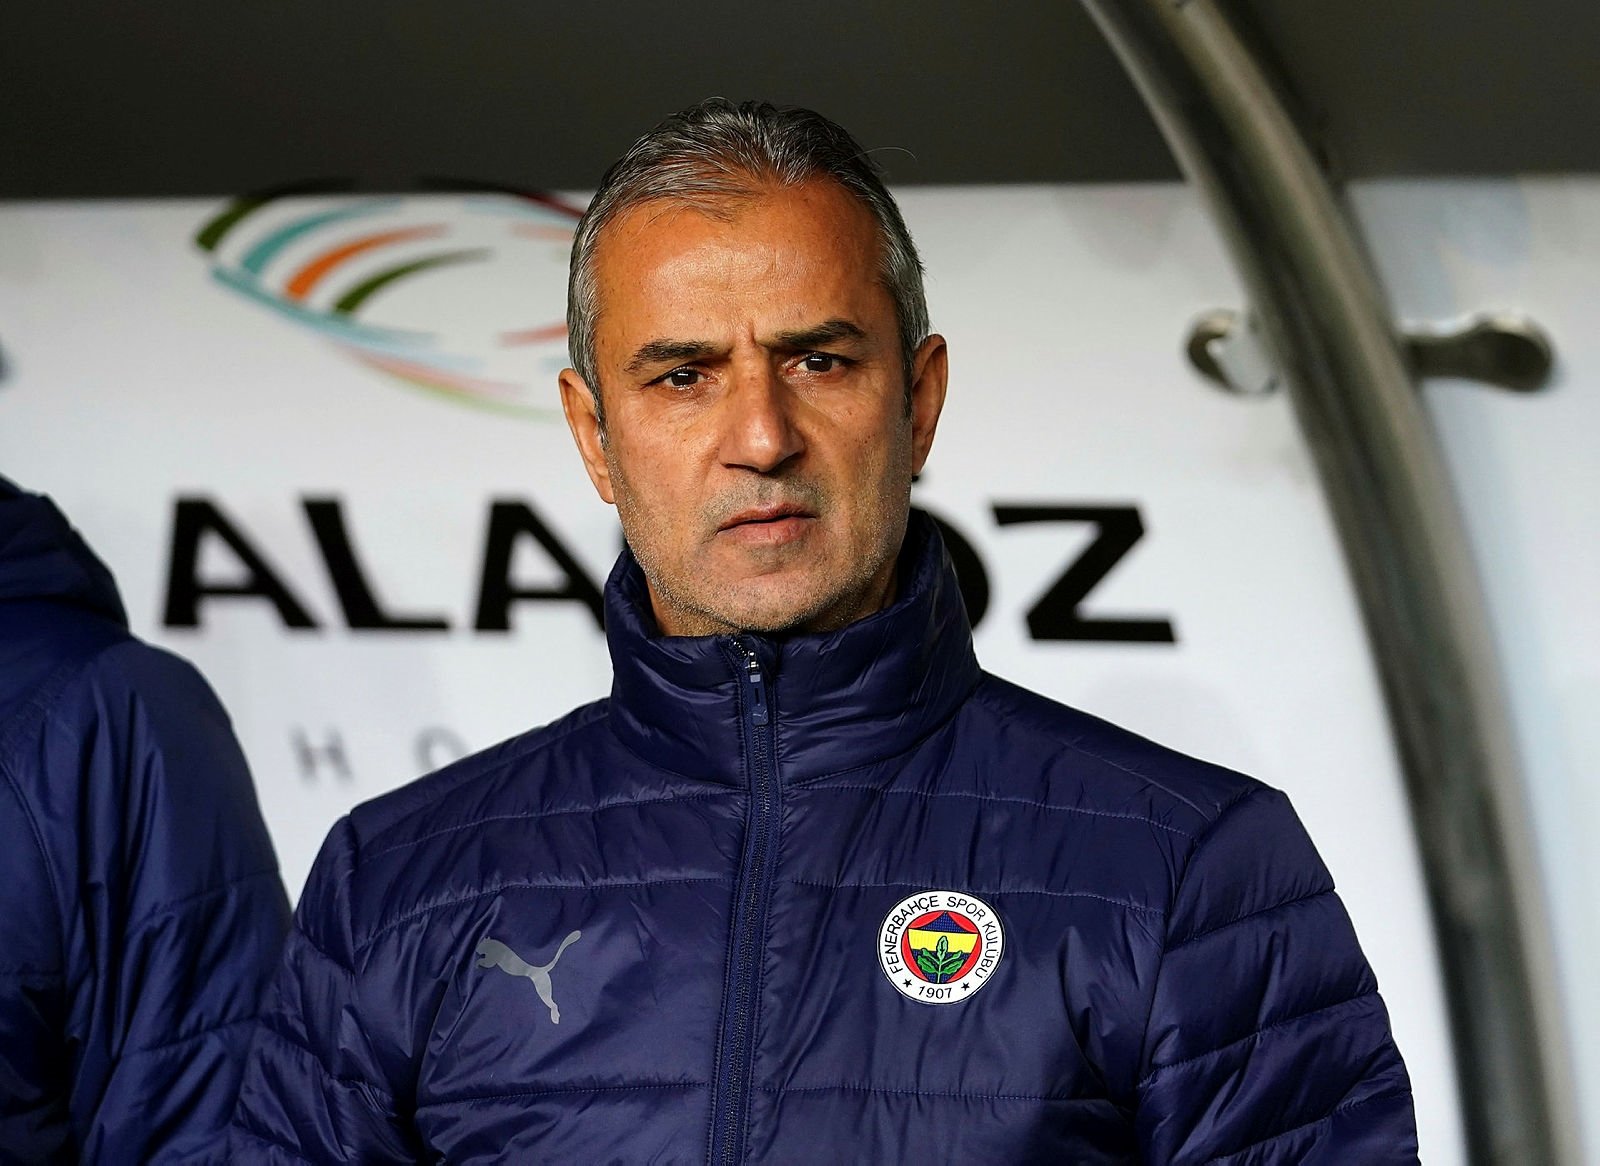 Fenerbahçe Teknik direktörü İsmail Kartal’ın eli, eğer milli futbolcu gelirse rahatlayacak.